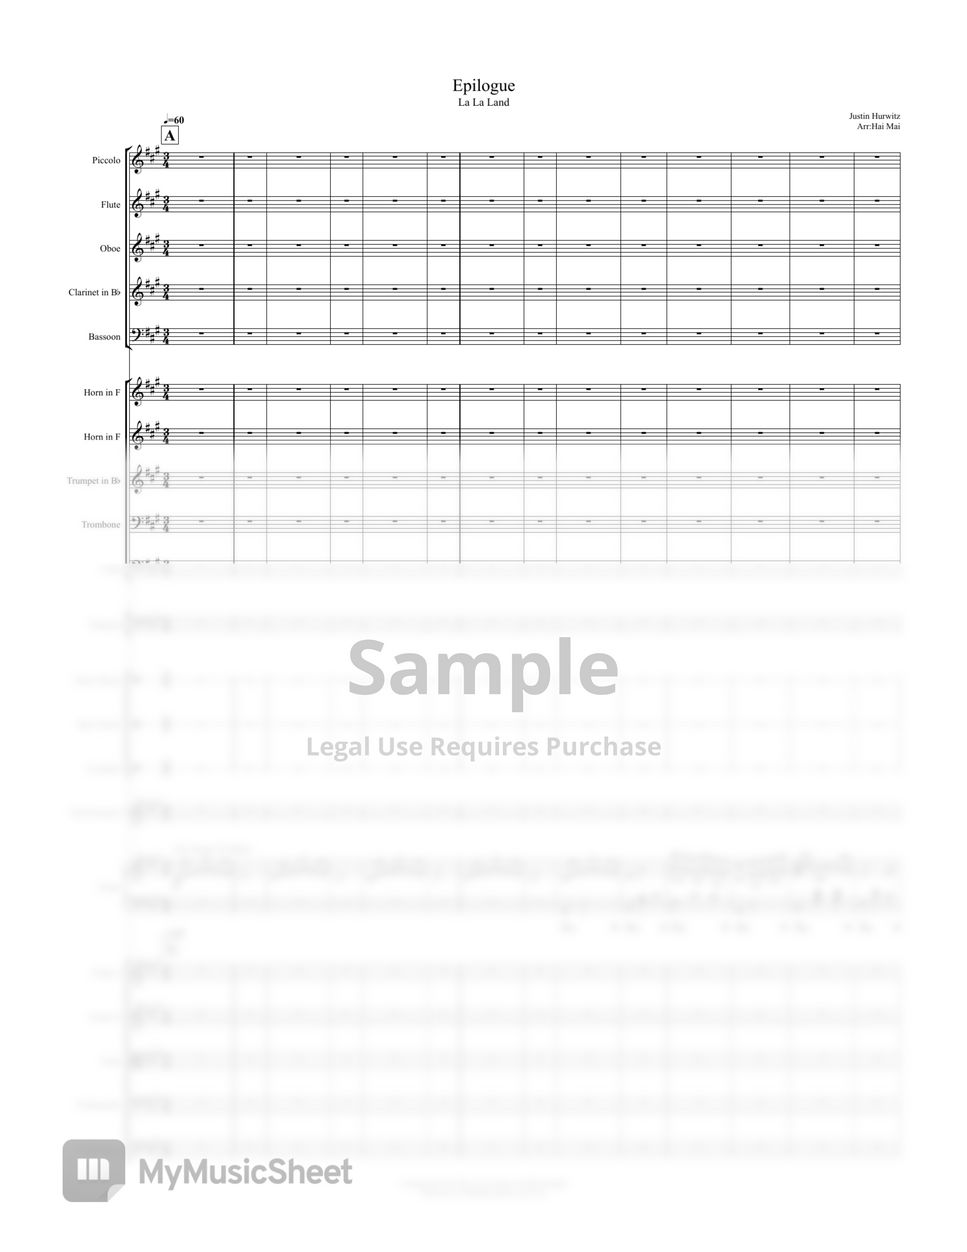 Justin Hurwitz - Epilogue(La La Land) for Orchestra - Orchestral Score by Hai Mai